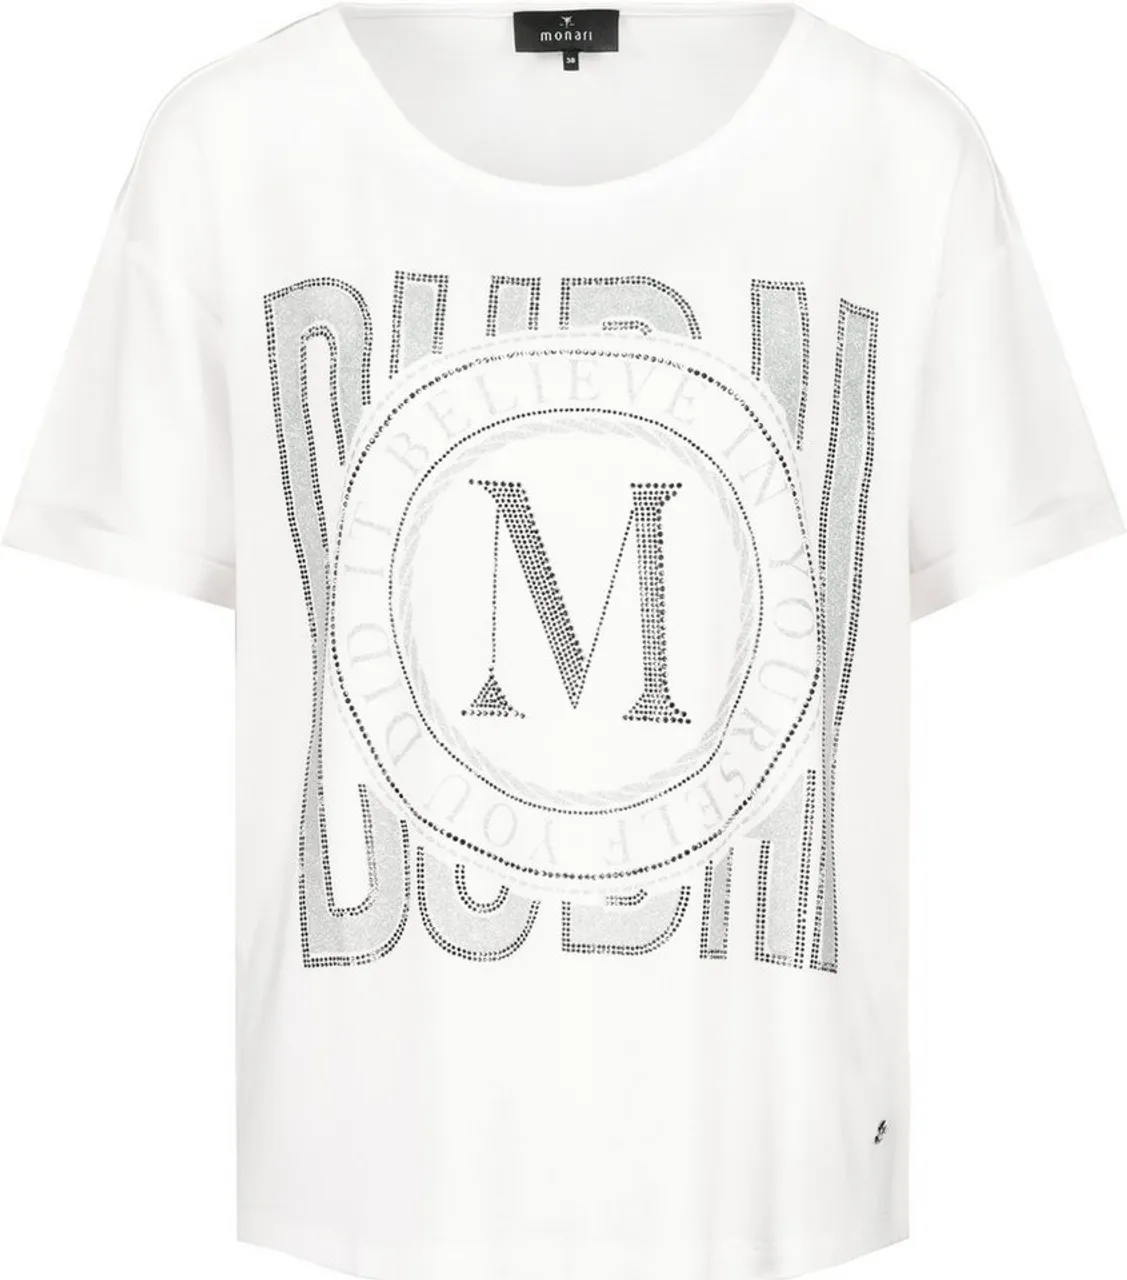 Monari Kurzarmshirt T-Shirt off-white - Preise vergleichen